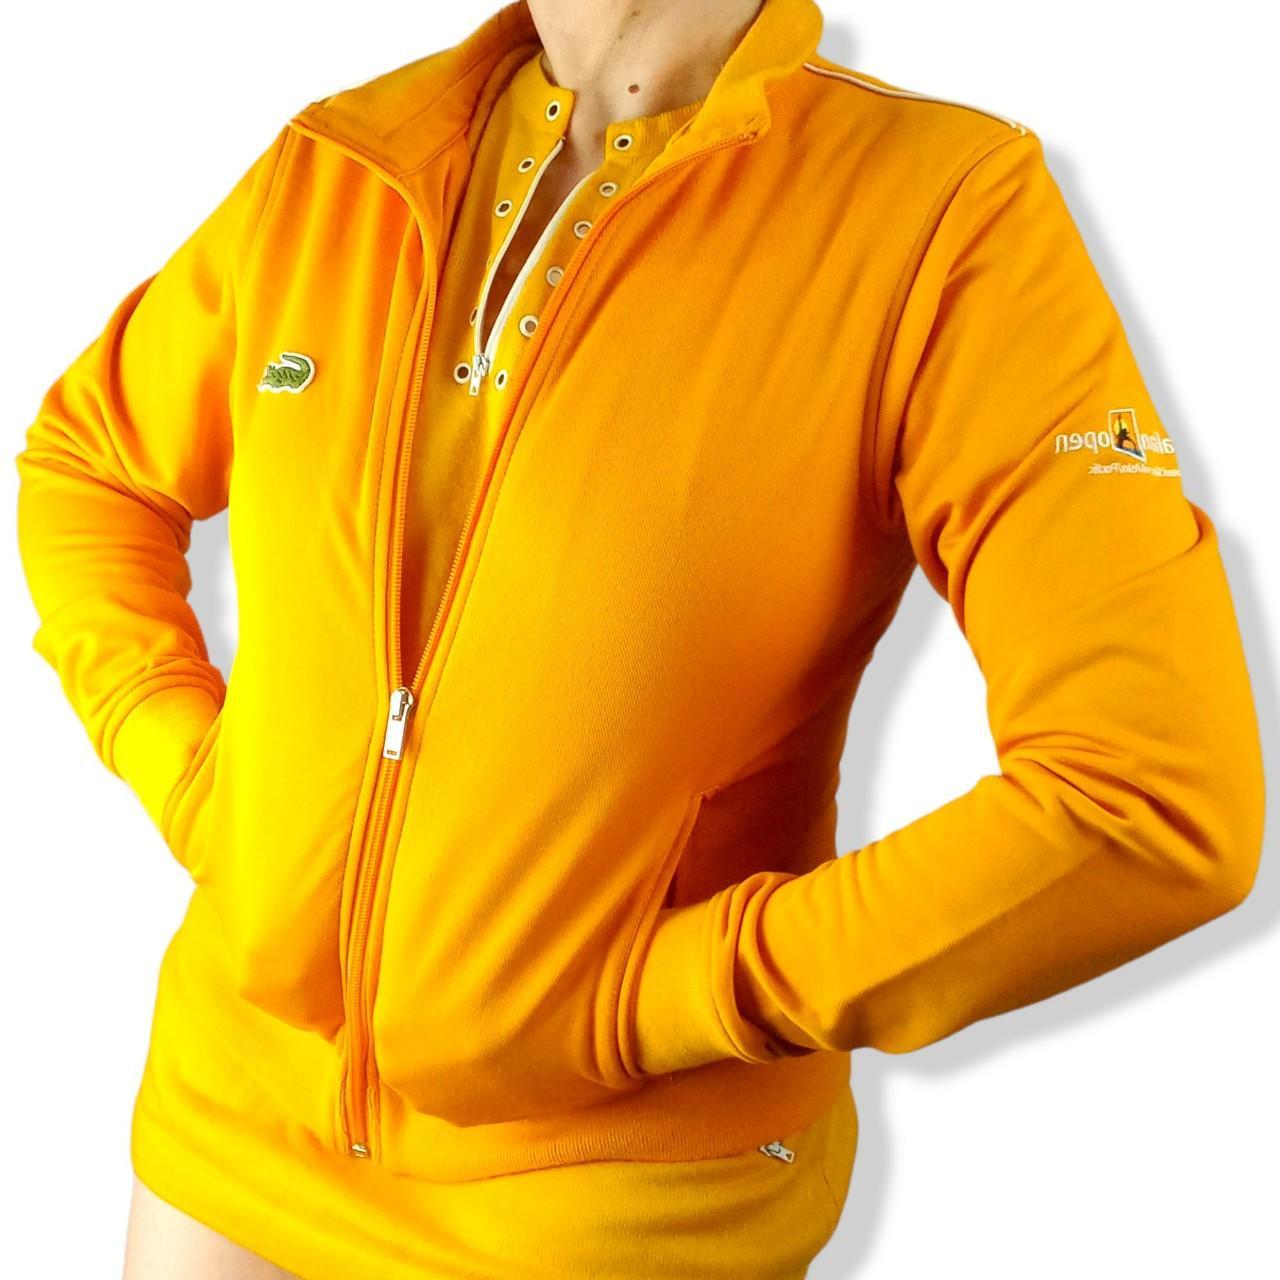 Lacoste AO Australian open Ladies Staff Jacket Size... - Depop